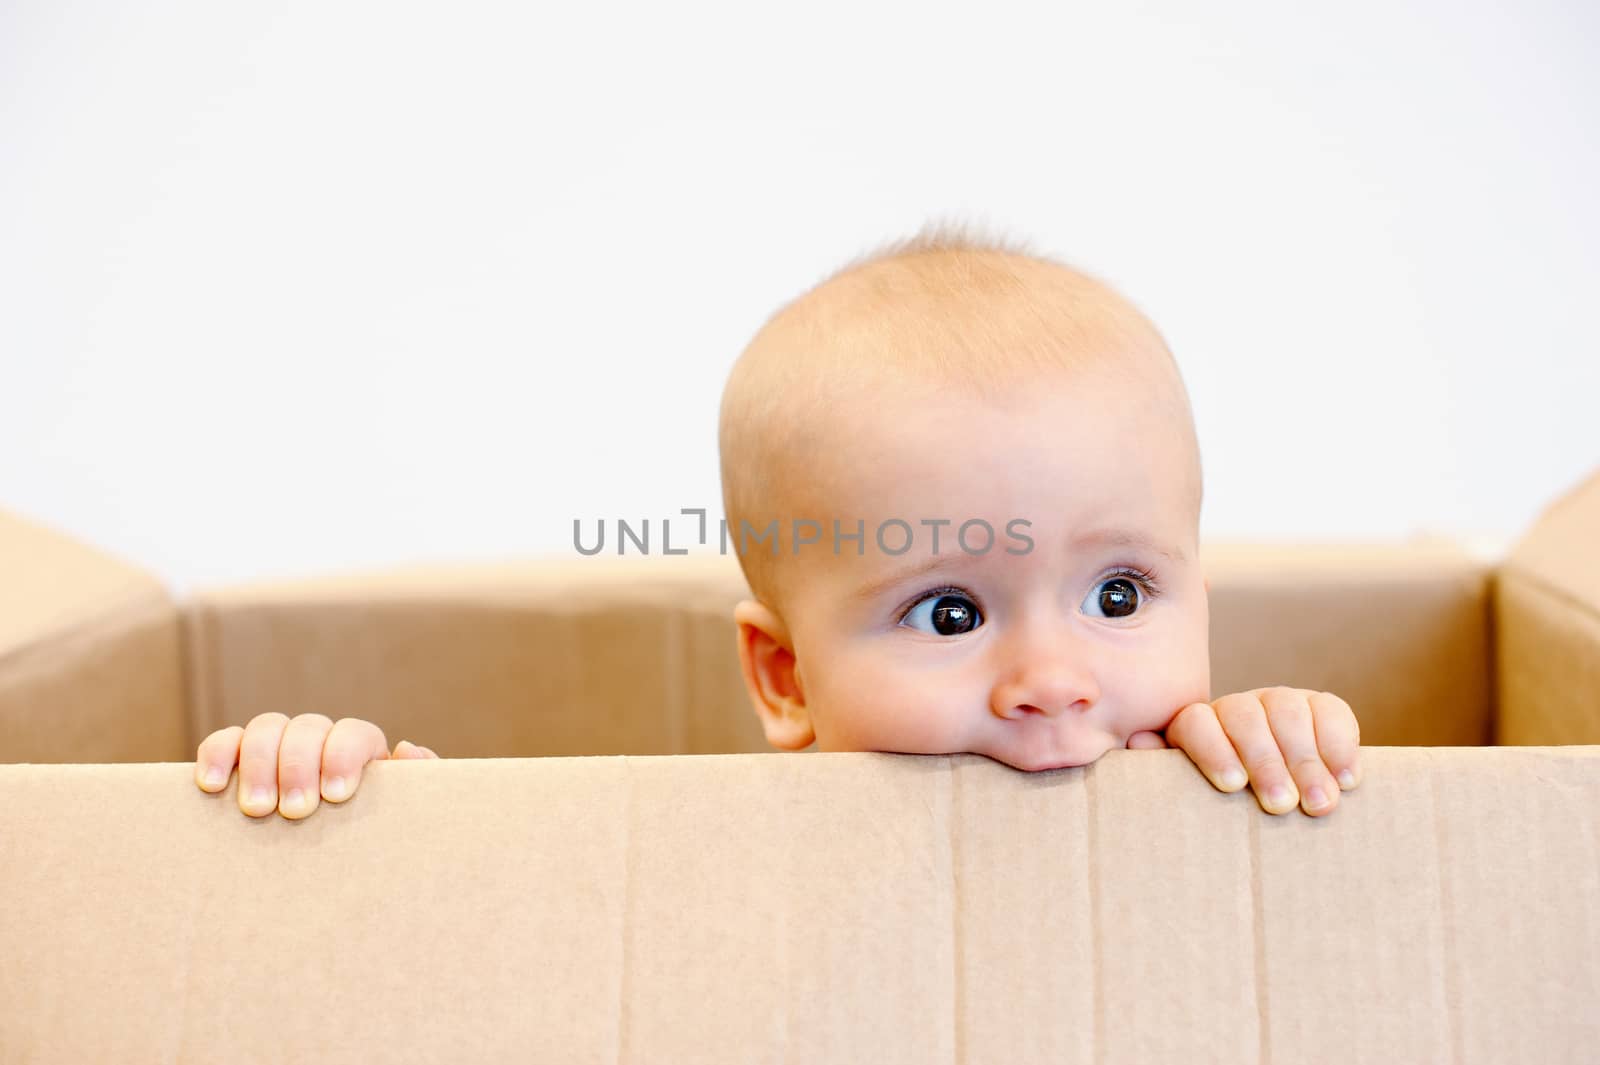 Baby in a carton box by Olinkau